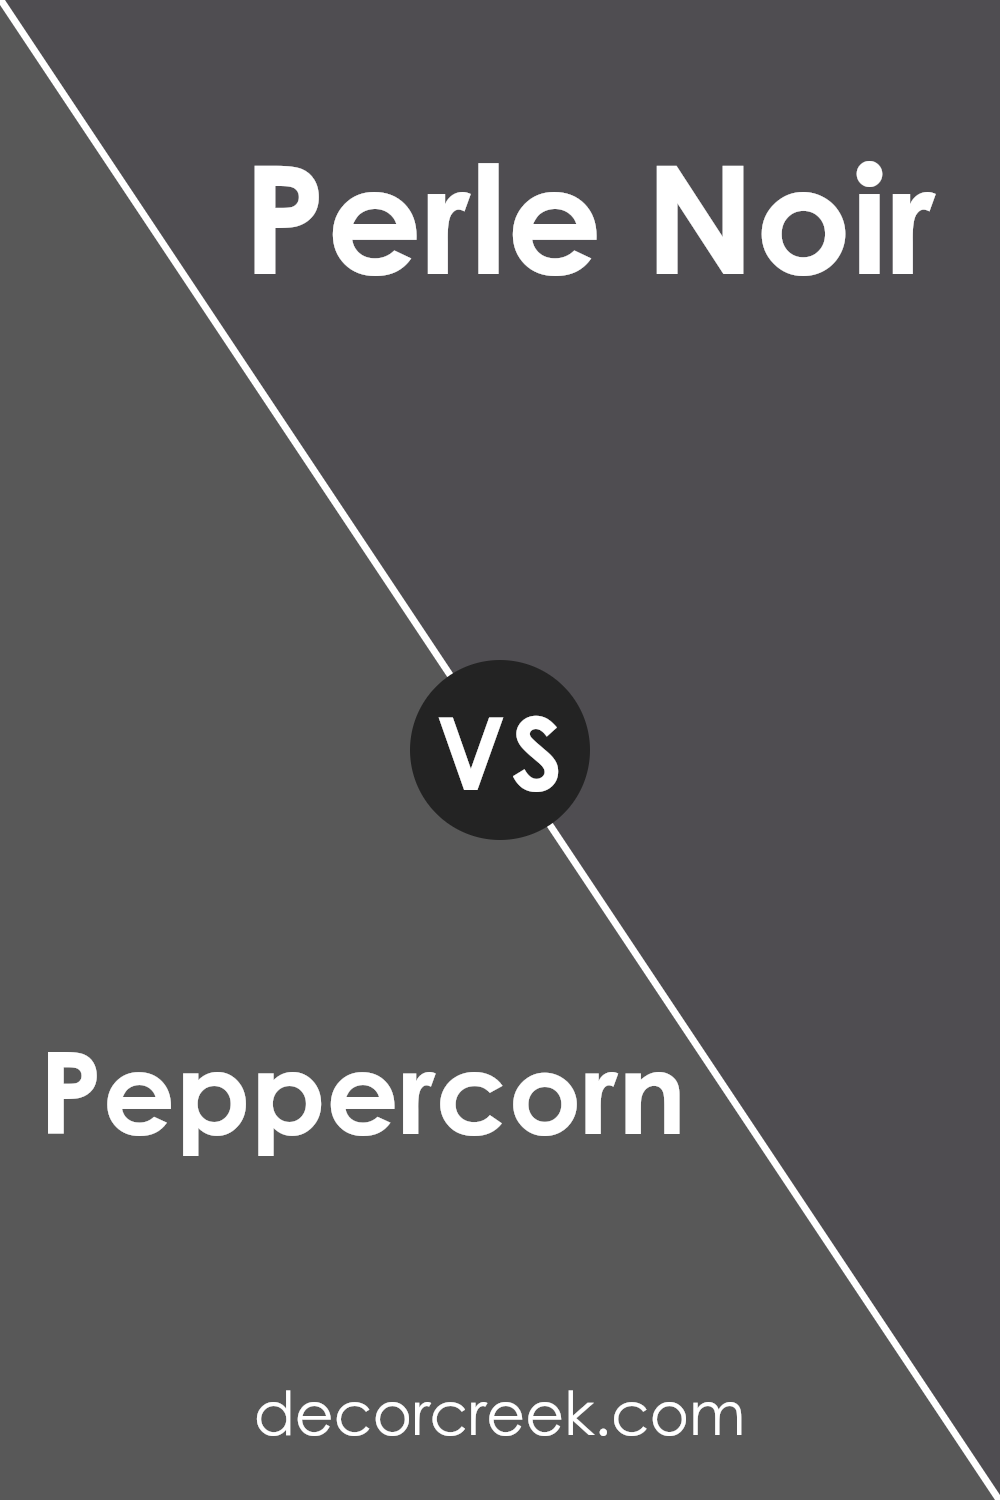 peppercorn_sw_7674_vs_perle_noir_sw_9154